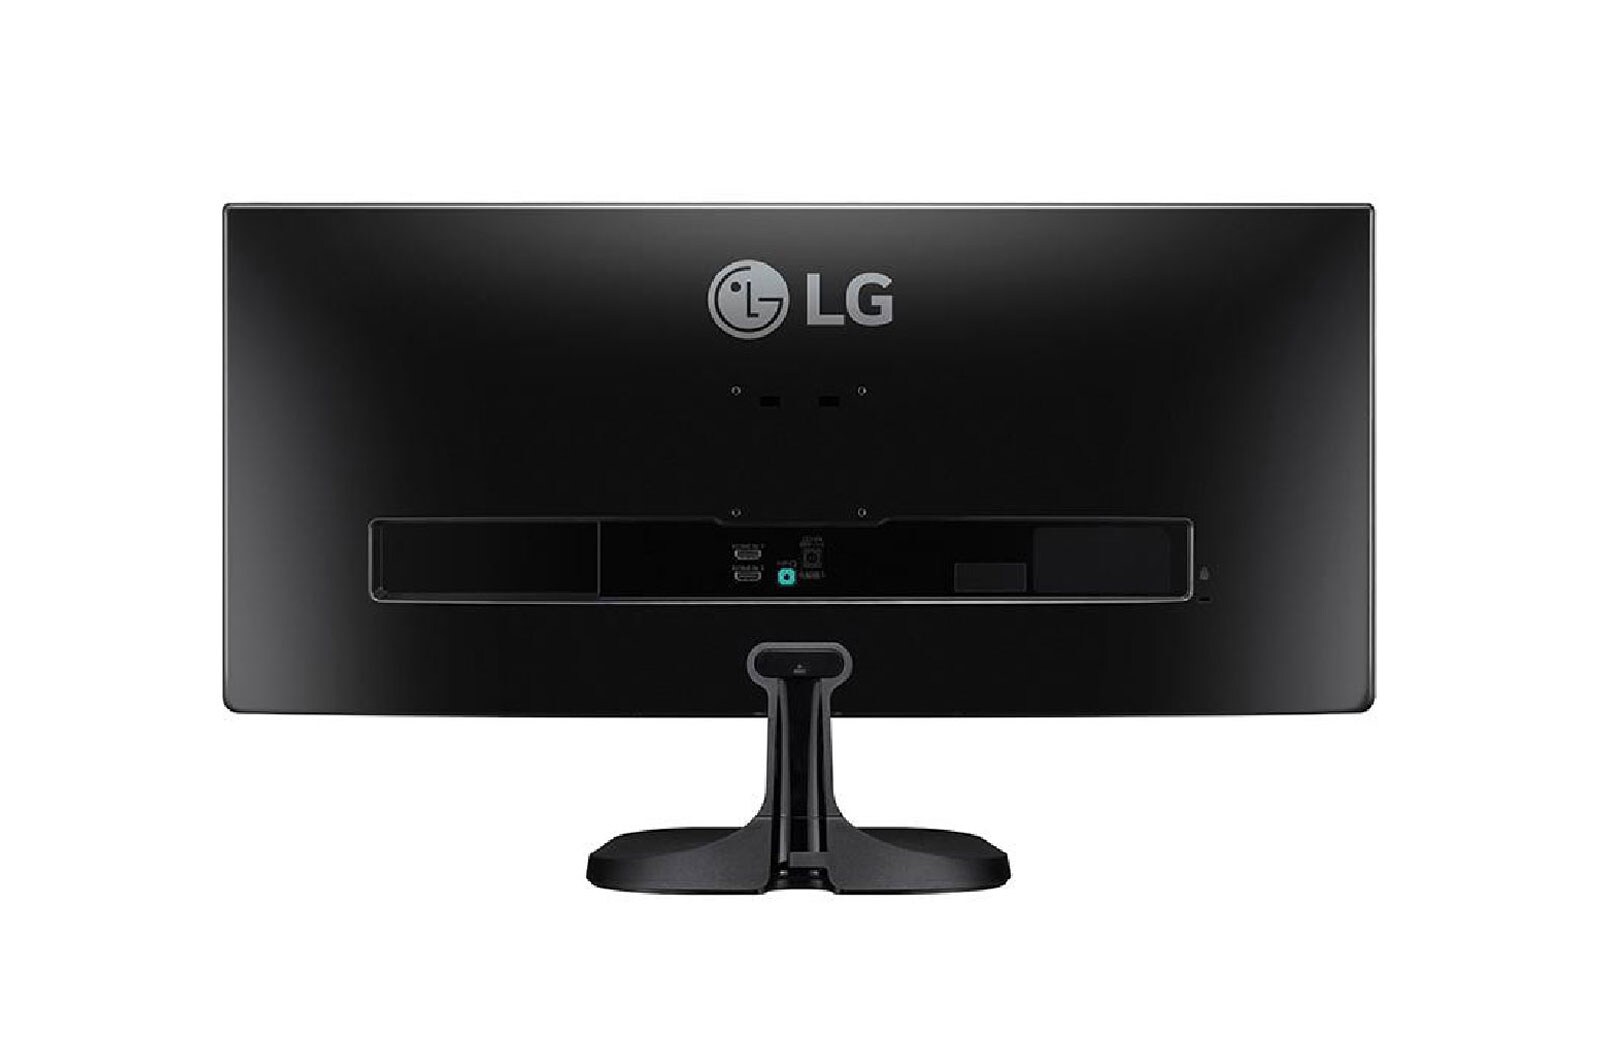 LG 29'' Class 21:9 UltraWide® Full HD IPS LED Monitor (29'' Diagonal